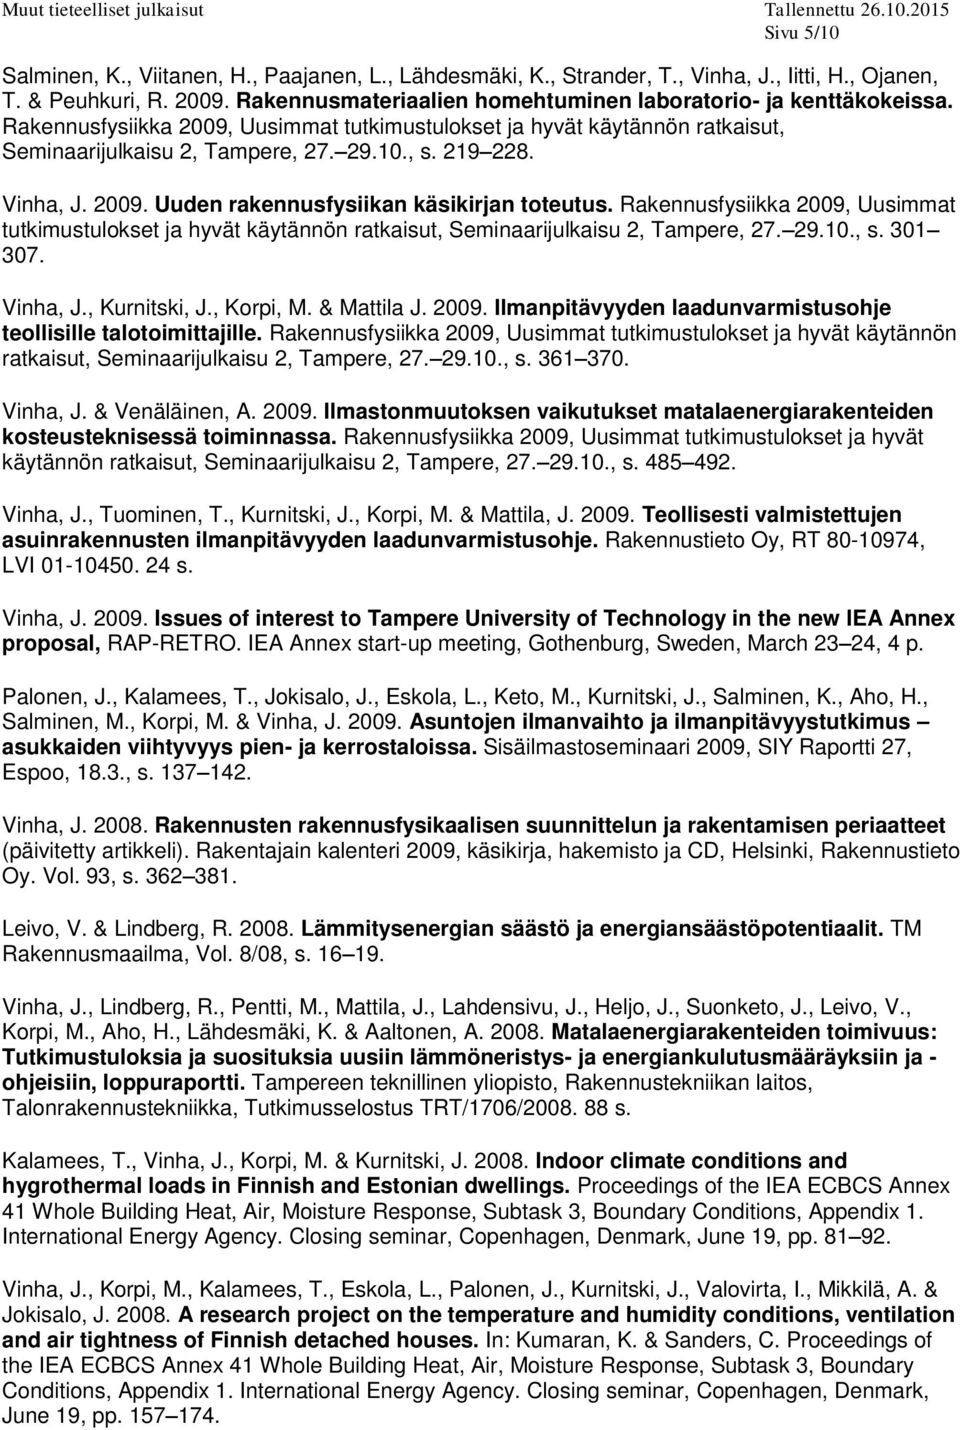 Vinha, J. 2009. Uuden rakennusfysiikan käsikirjan toteutus. Rakennusfysiikka 2009, Uusimmat tutkimustulokset ja hyvät käytännön ratkaisut, Seminaarijulkaisu 2, Tampere, 27. 29.10., s. 301 307.